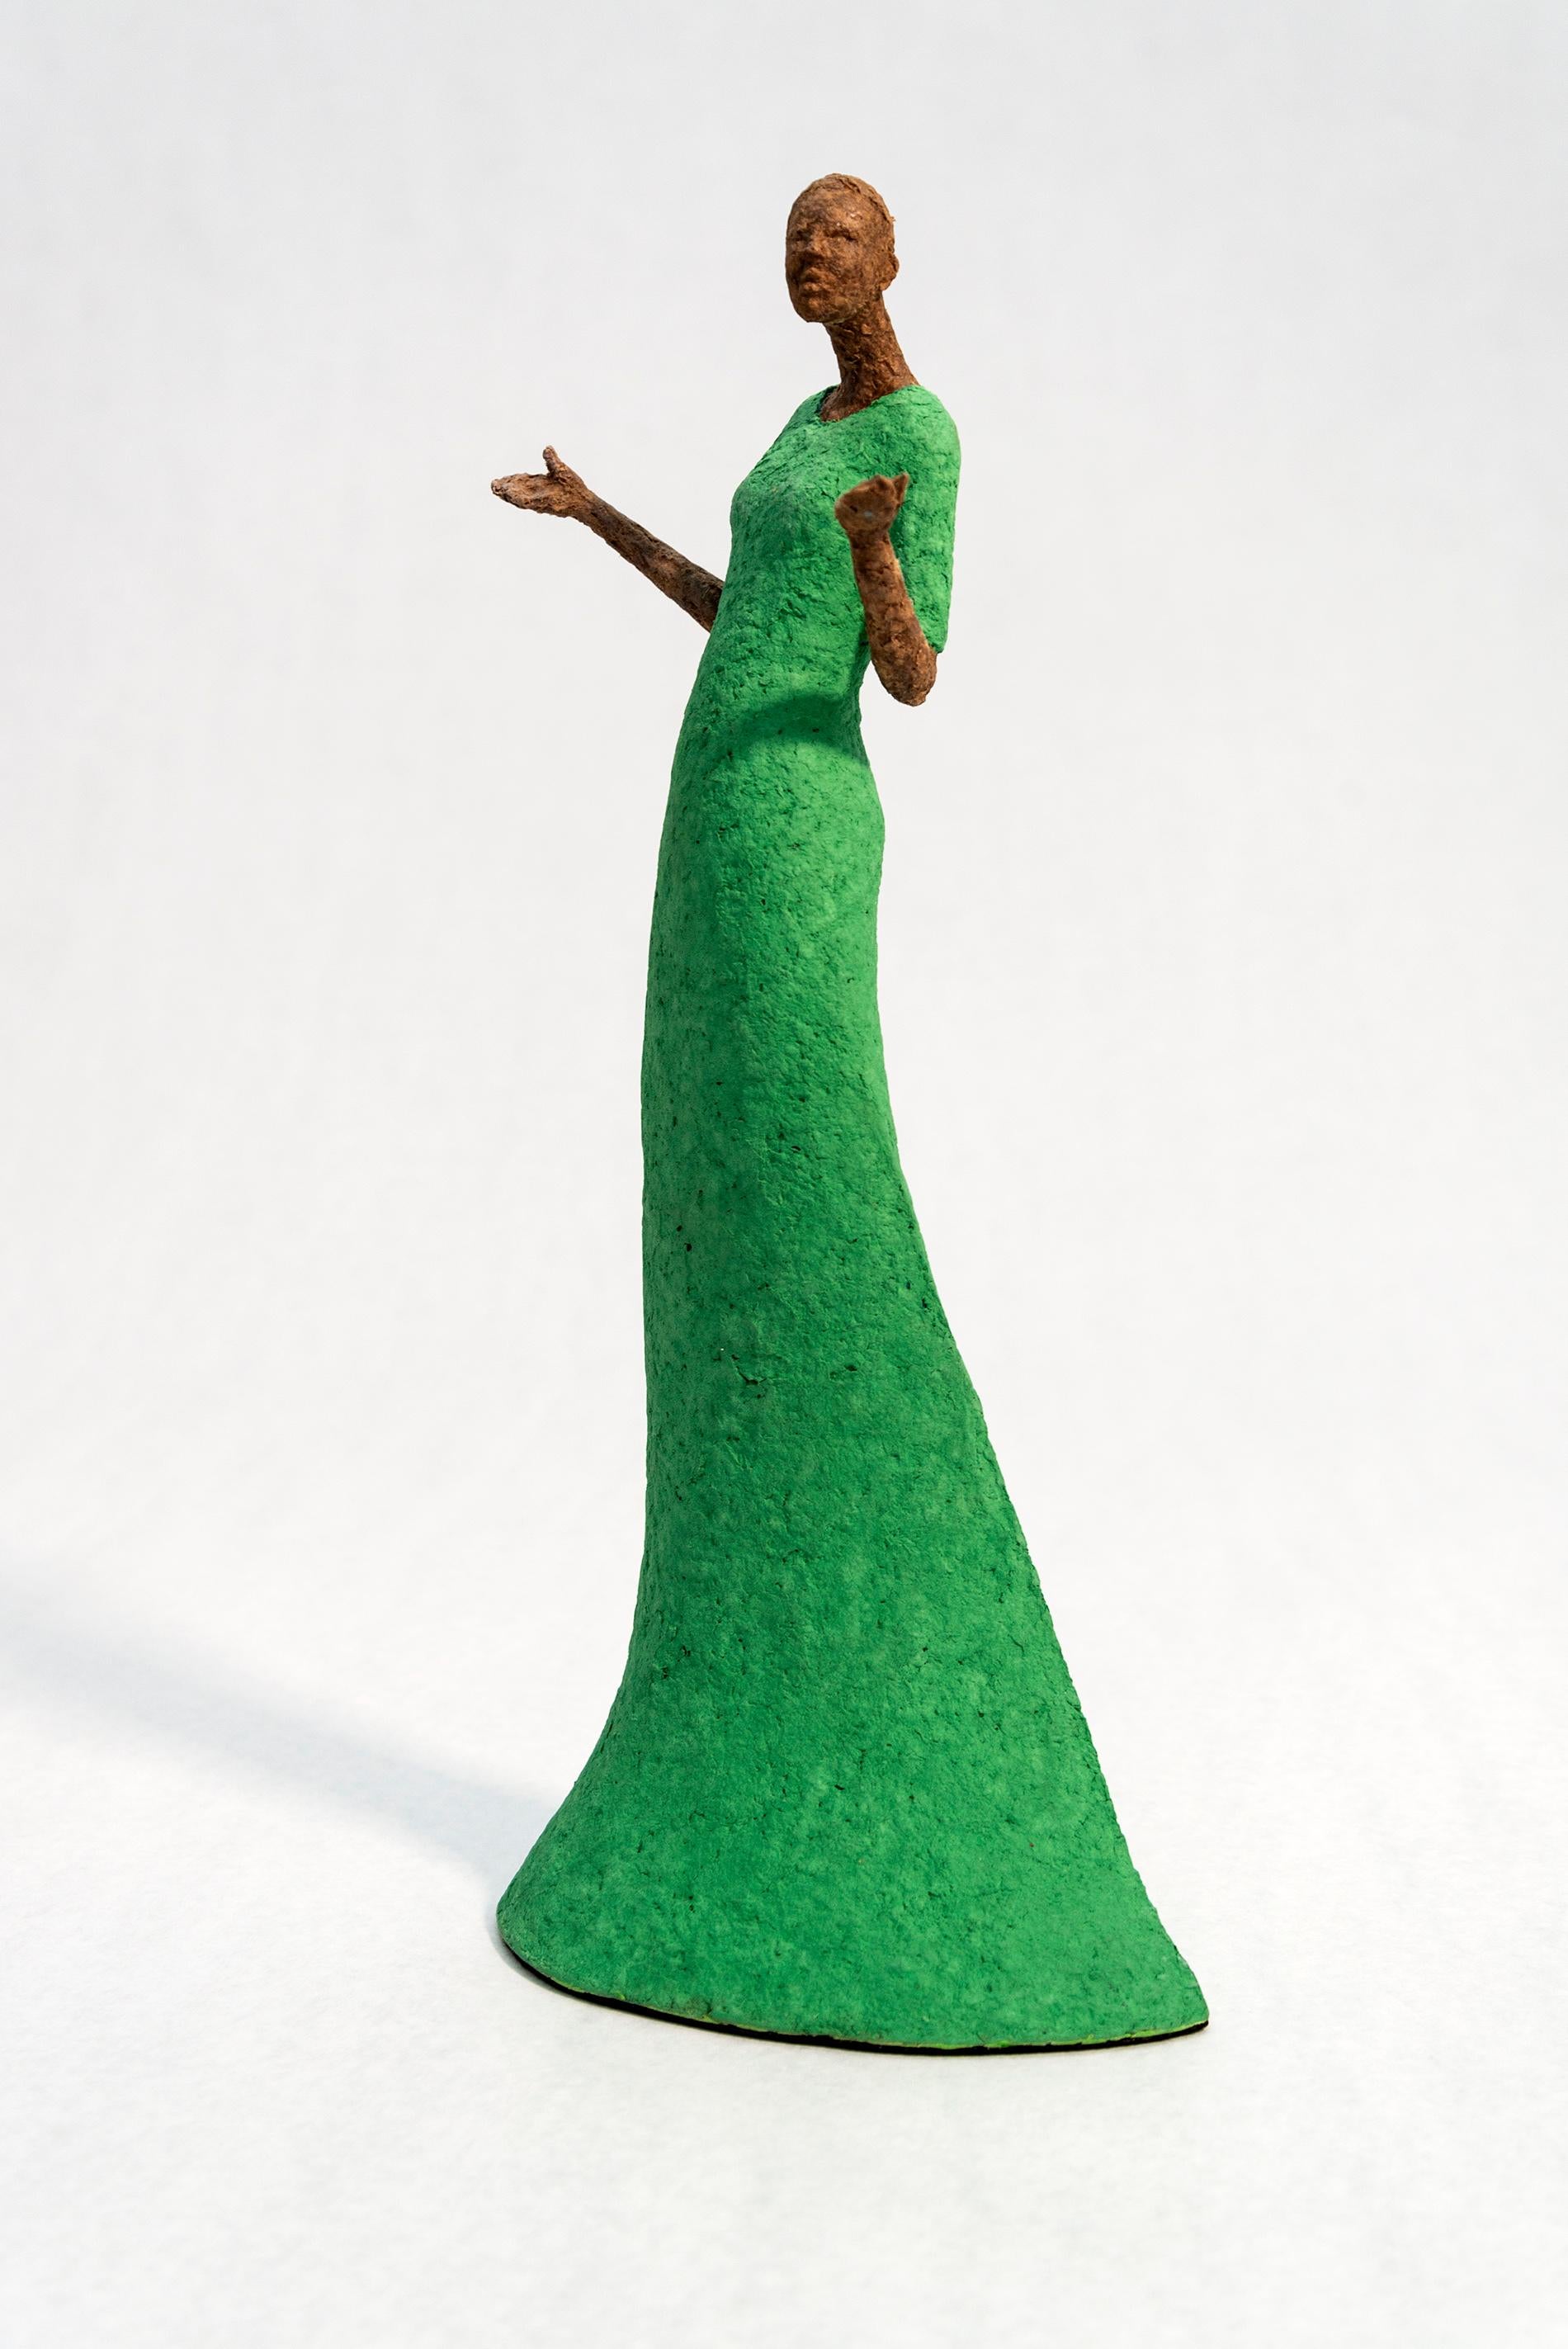 Bella, lumineuse, expressive, texturée, féminine, figurative, sculpture en papier mâché - Sculpture de Paul Duval